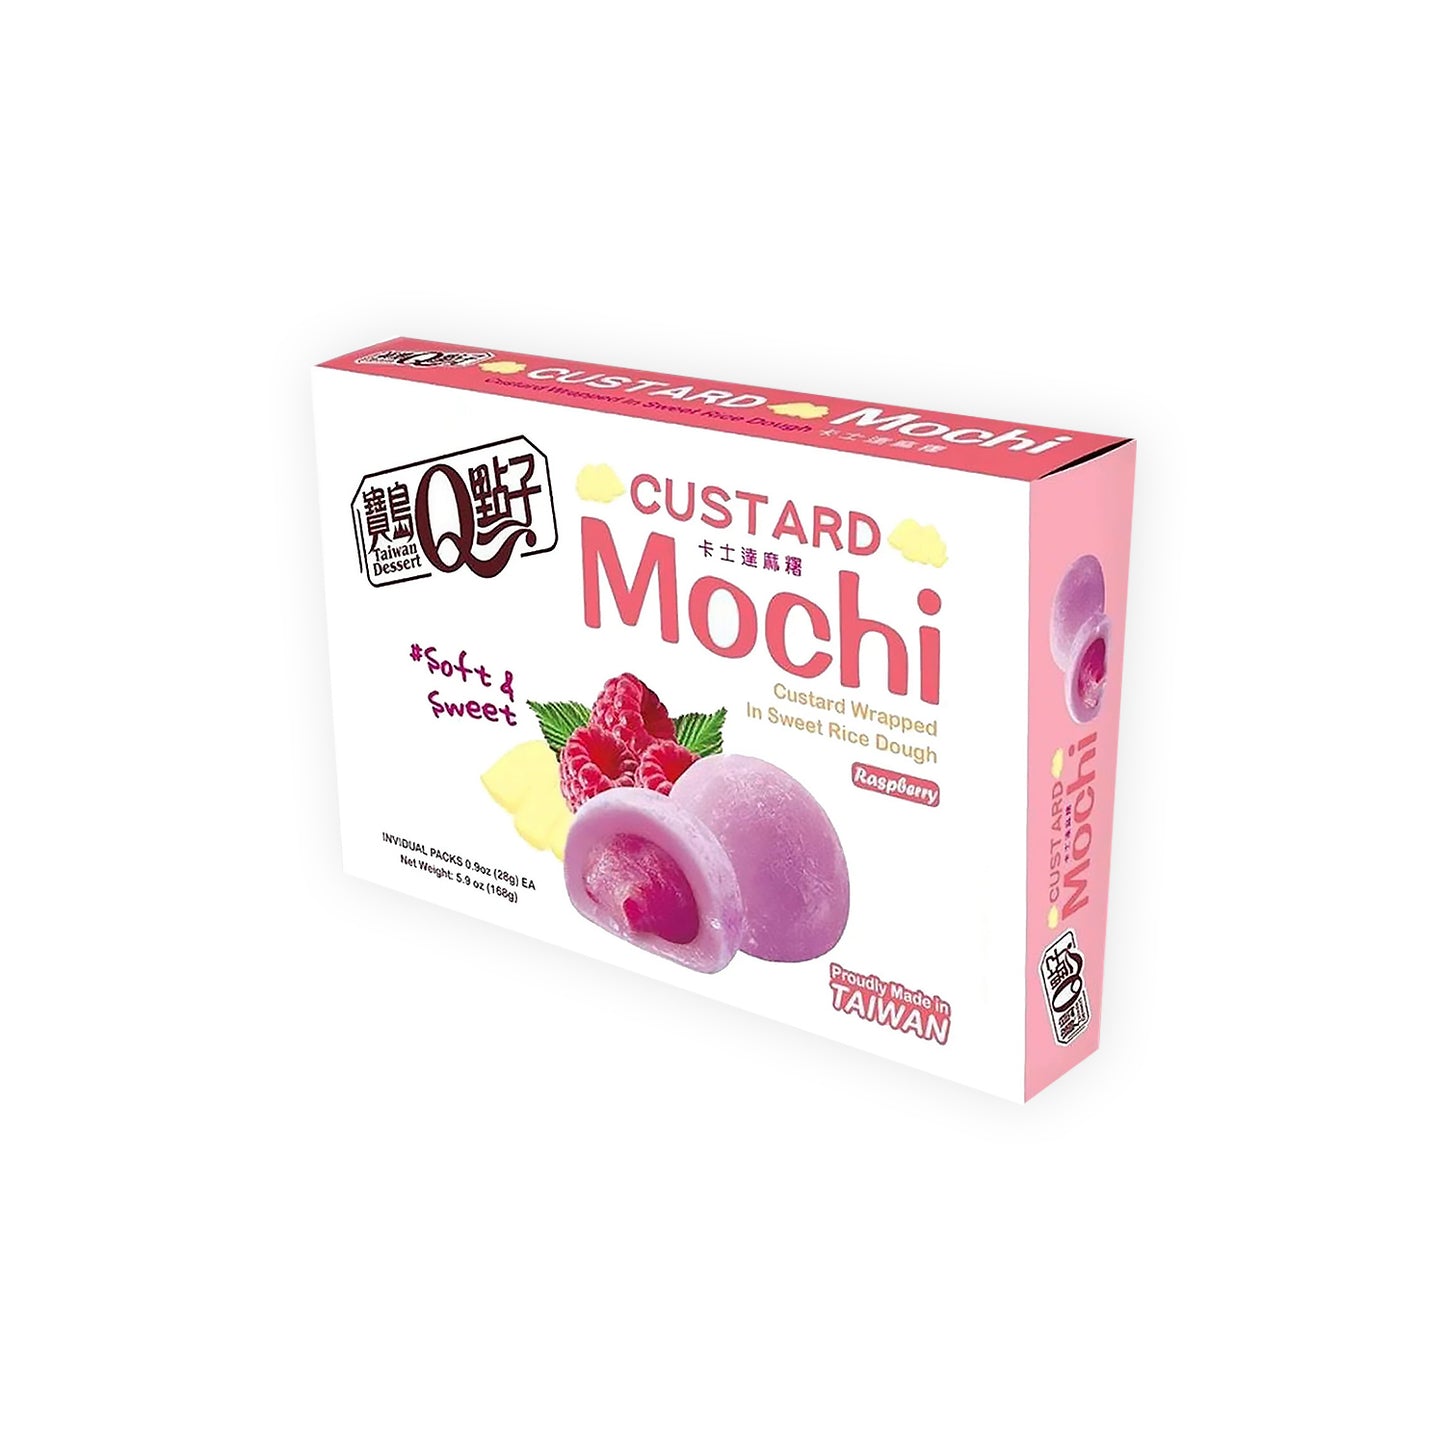 Custard Mochi - Raspberry